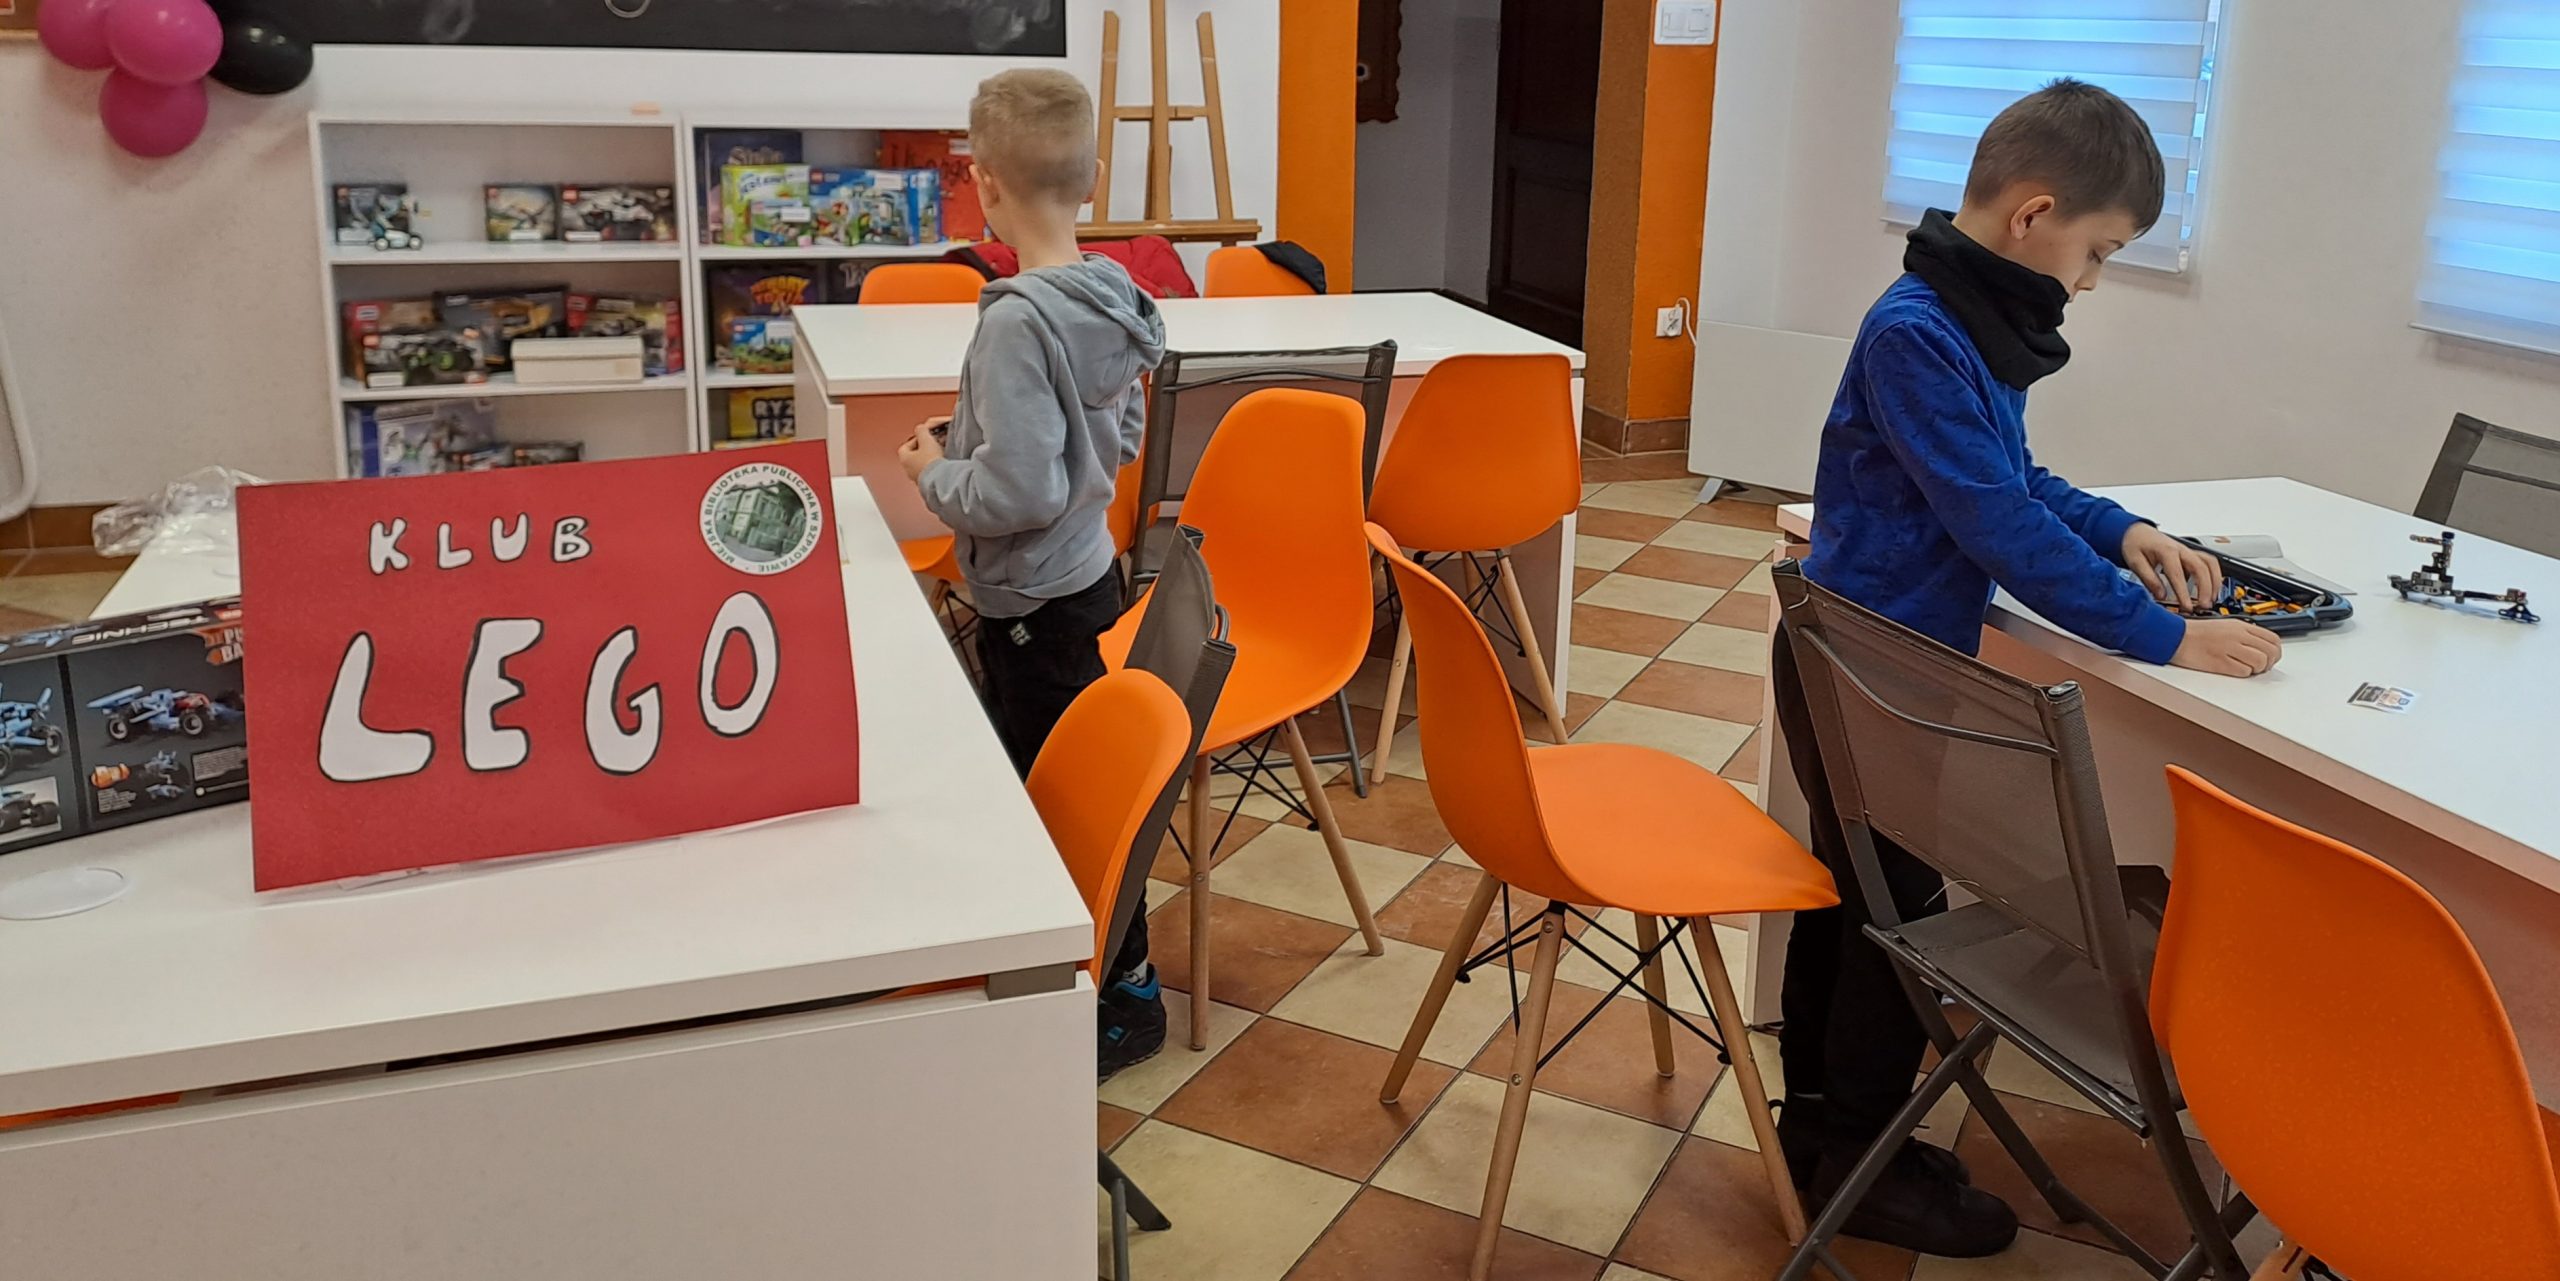 zdjęcie dzieci przy stolikach podczas układania modeli lego